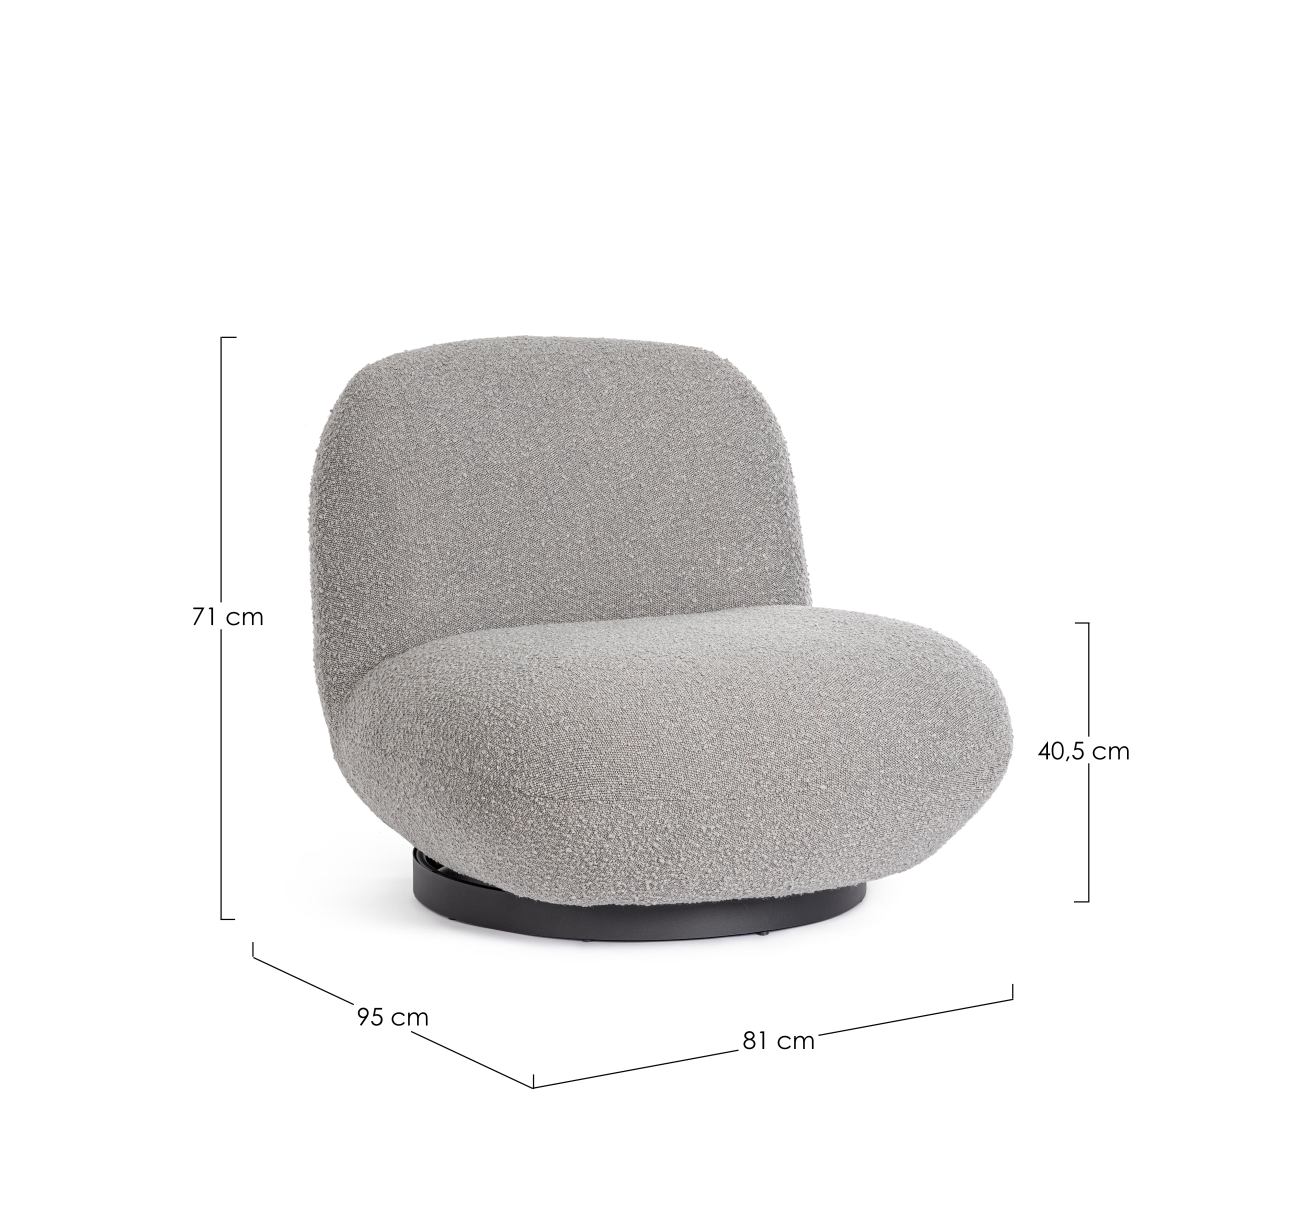 Der Sessel Margot überzeugt mit seinem modernen Stil. Gefertigt wurde er aus Bouclè-Stoff, welcher einen grauen Farbton besitzt. Das Gestell ist aus Metall und hat eine schwarze Farbe. Der Sessel verfügt über eine Drehfunktion.